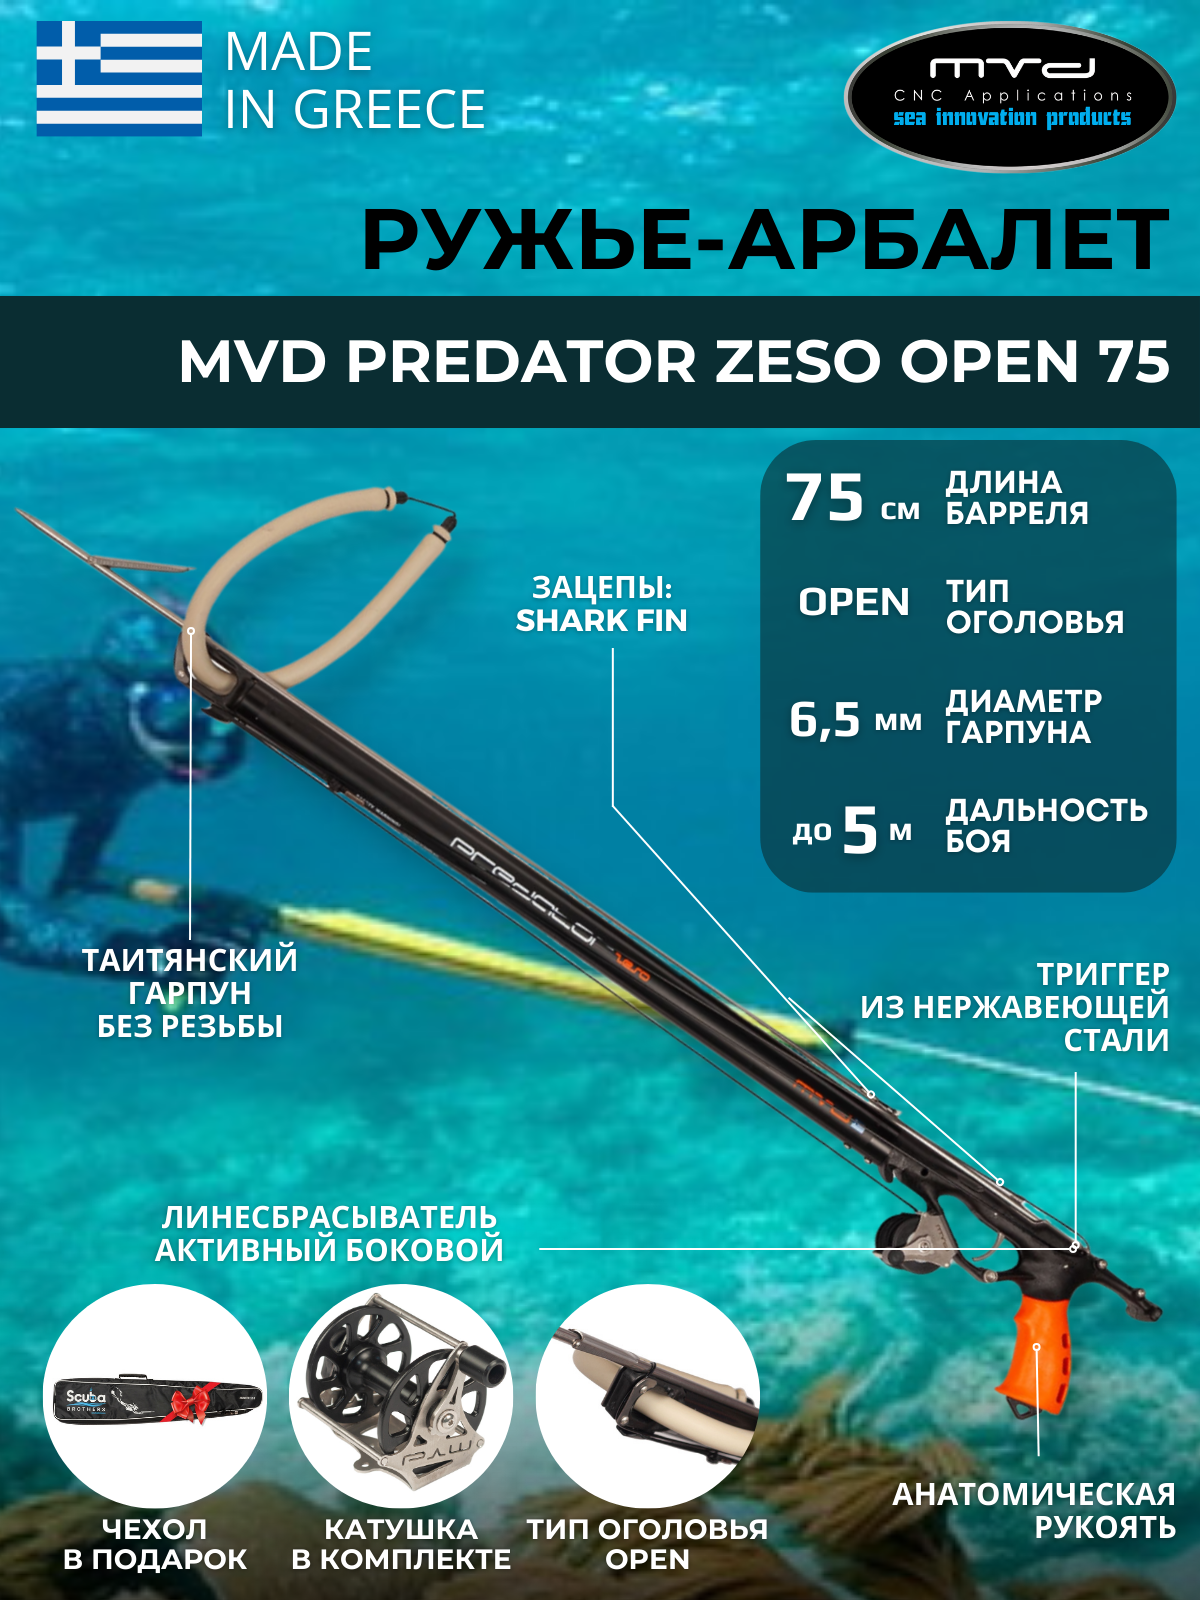 Ружье-арбалет MVD PREDATOR ZESO OPEN 75 см с катушкой полный комплект